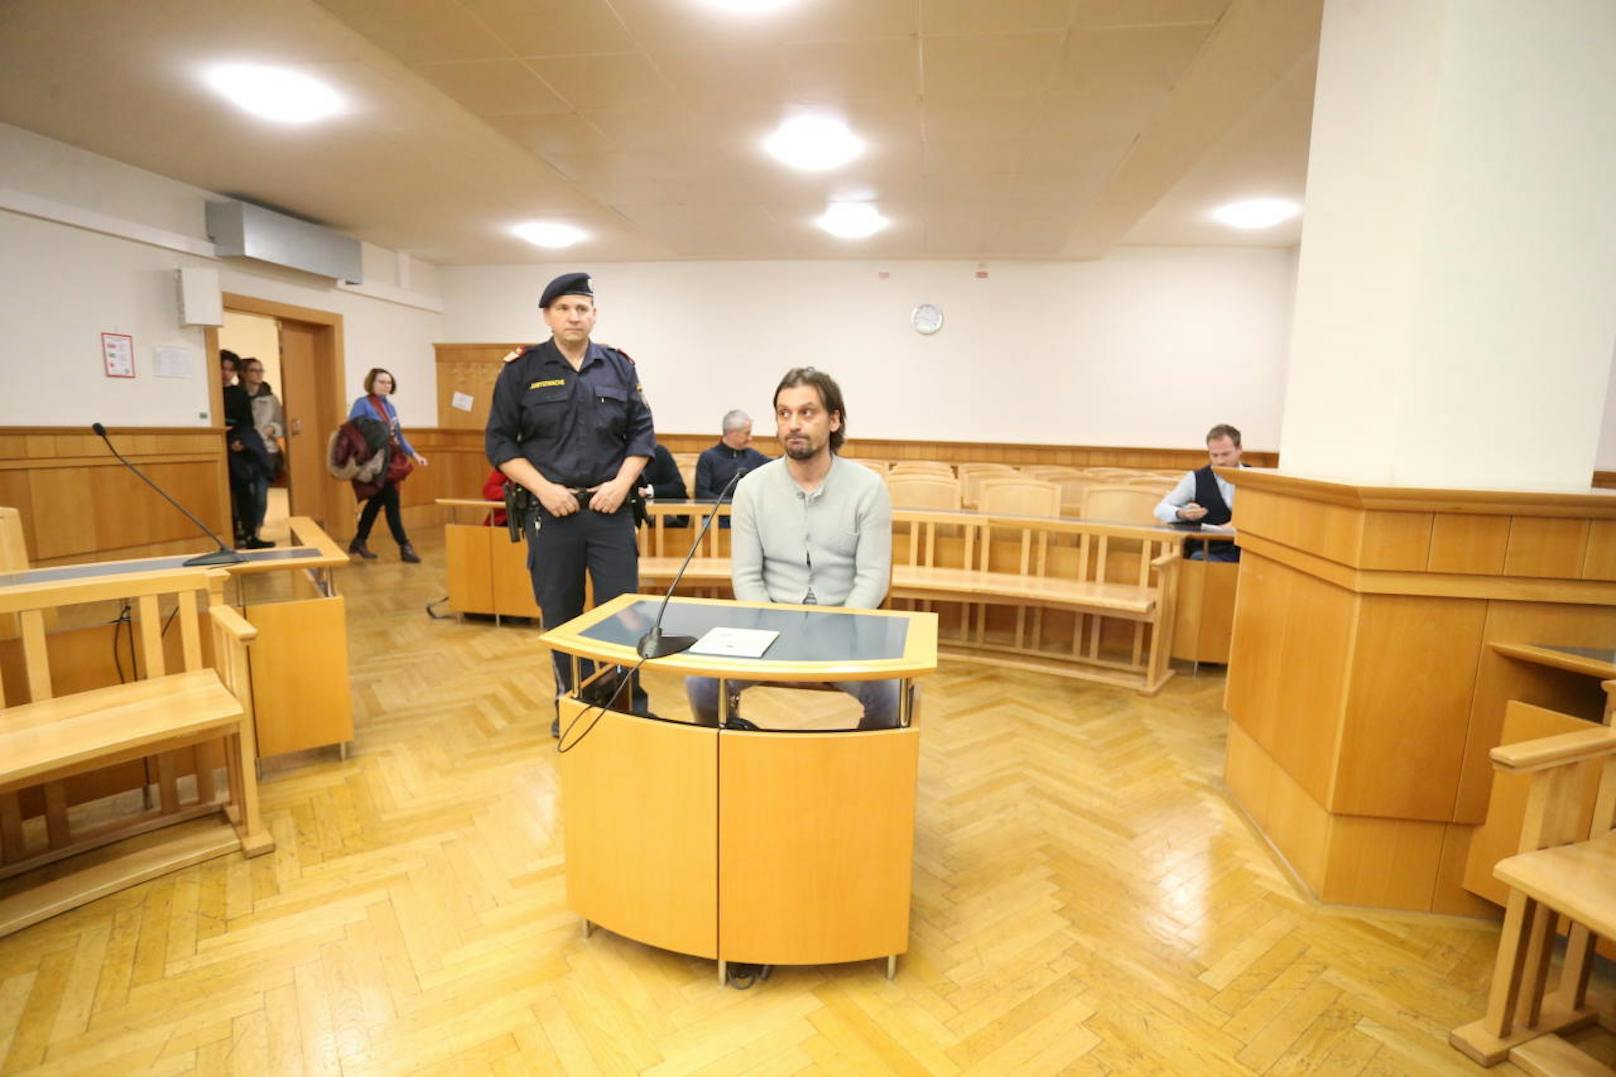 Kuljic behauptet, nach wie vor süchtig zu sein, schlug daher vor, anstatt einer Strafe eine Therapie zu bekommen. Sollte diese genehmigt werden, kommt er - da er bereits in Untersuchungshaft saß - vorzeitig auf freien Fuß.